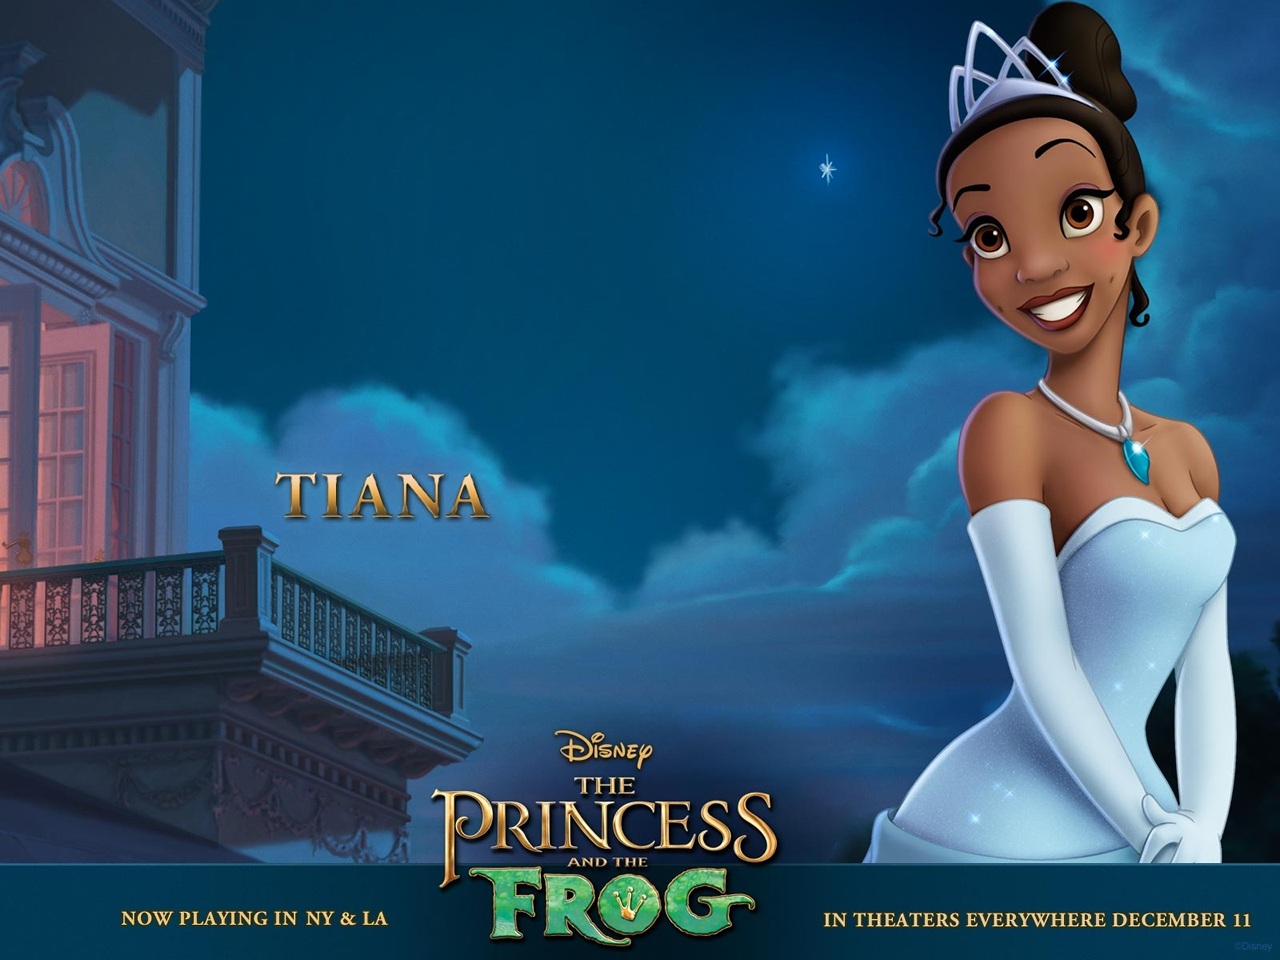 "The Princess and the Frog: Tiana" desktop wallpaper (1280 x 960 pixels)